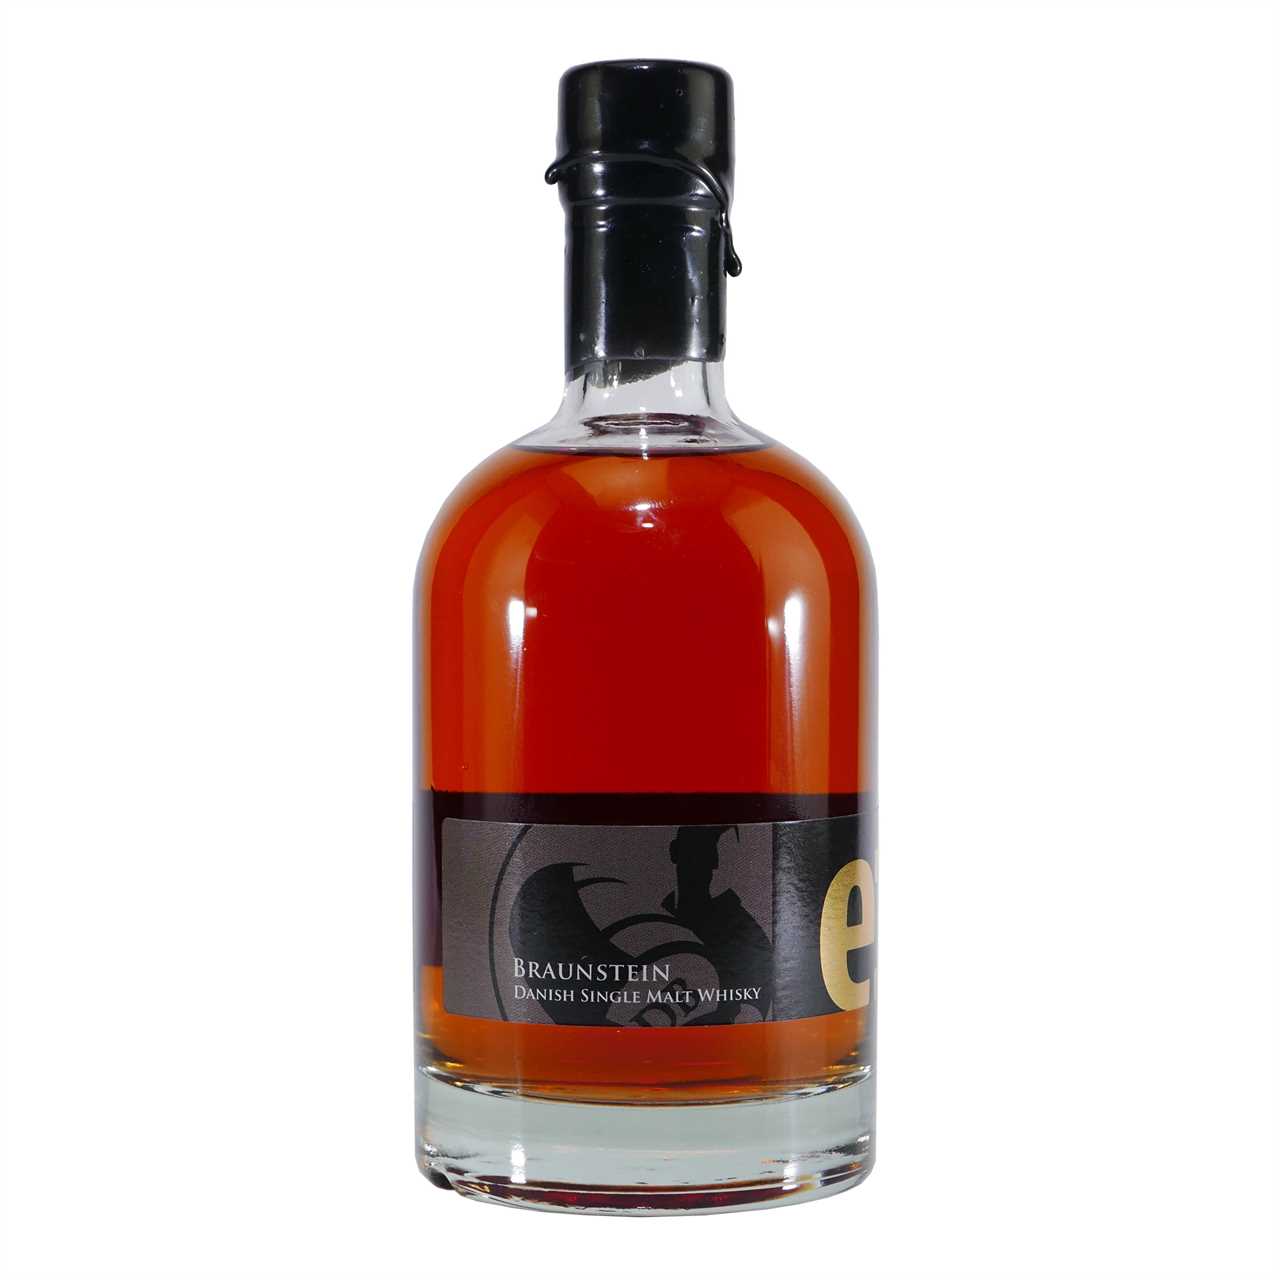 Braunstein Dansk Whisky Cask Strength Edition e:7